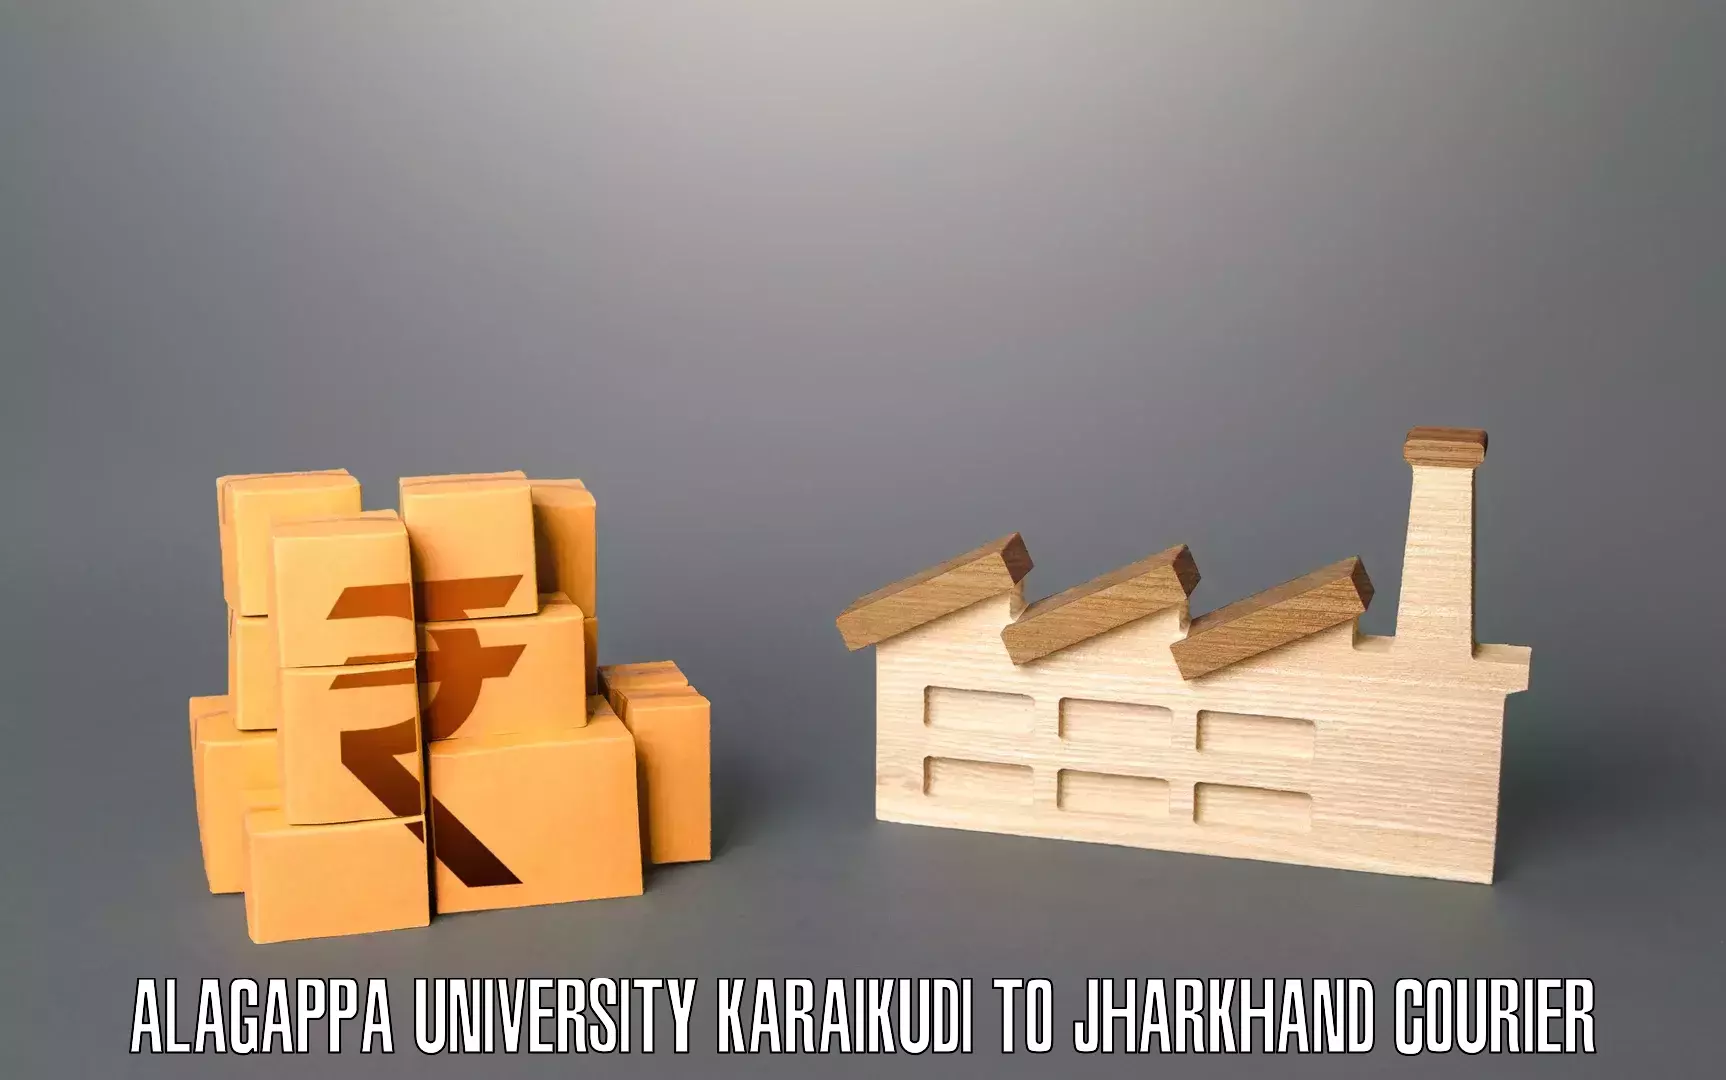 Professional packing services Alagappa University Karaikudi to Tandwa